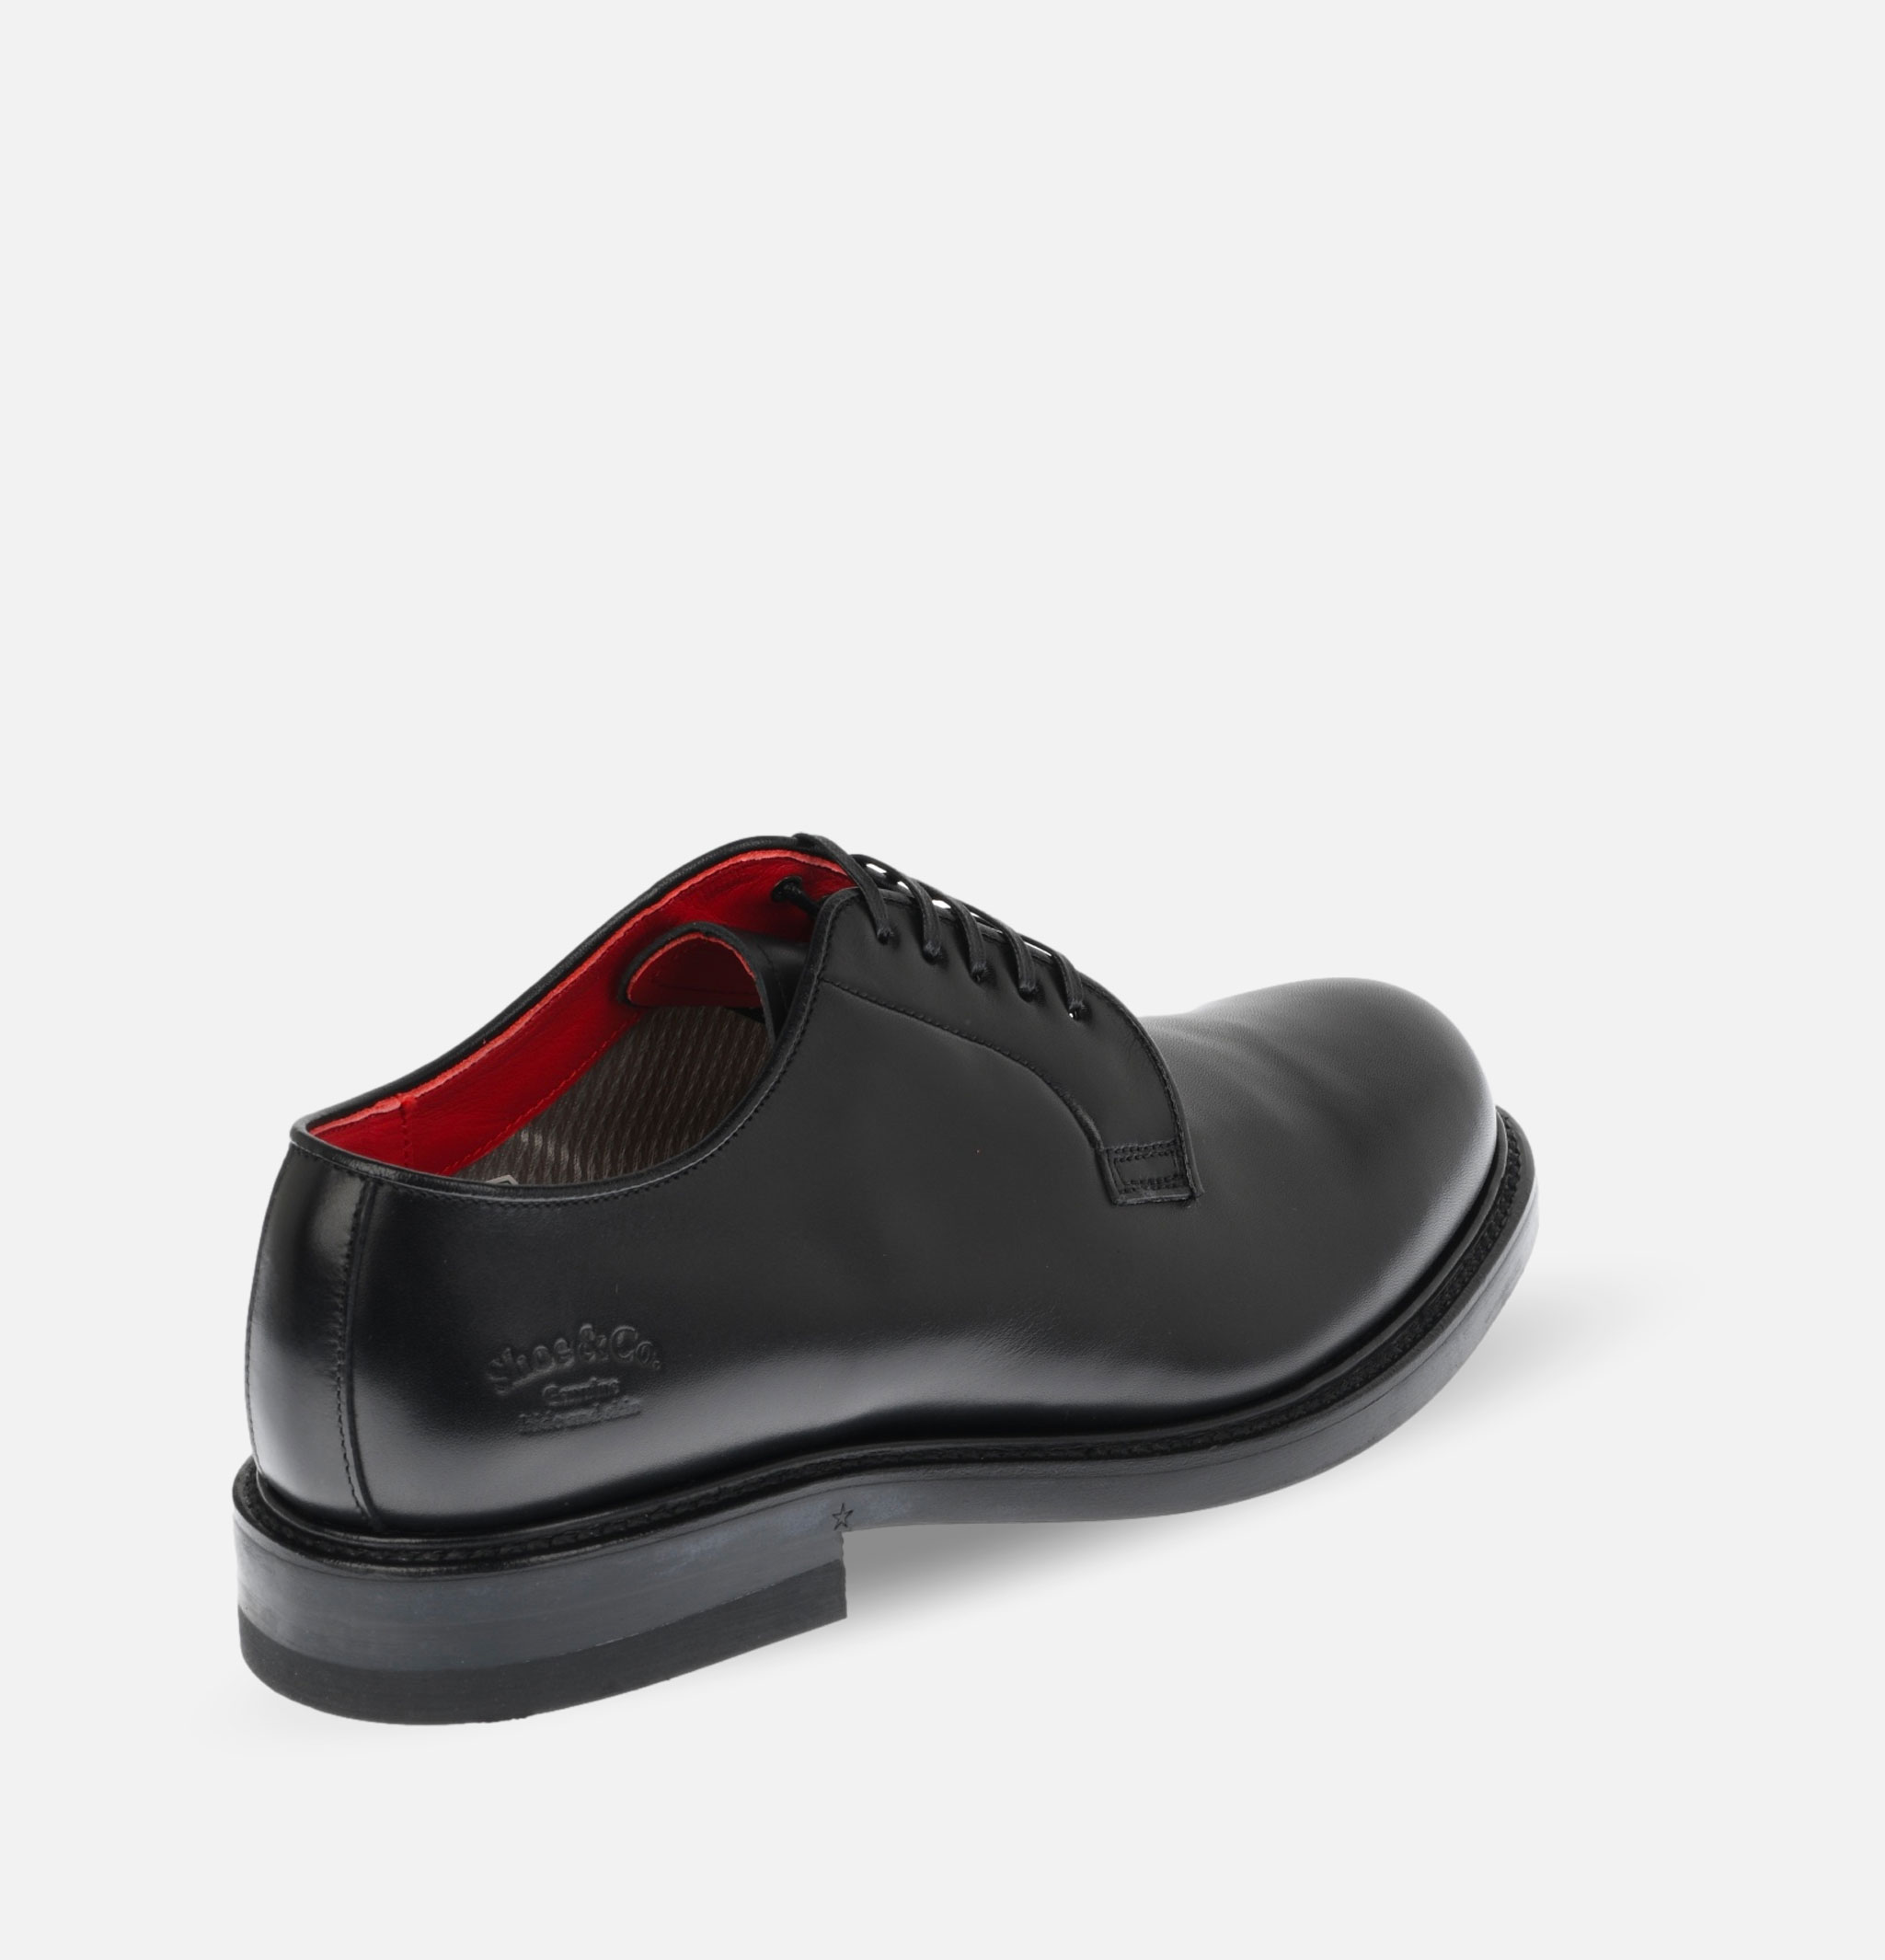 Chaussures Regal Shoe & Co Plain-toe Black Gore-tex